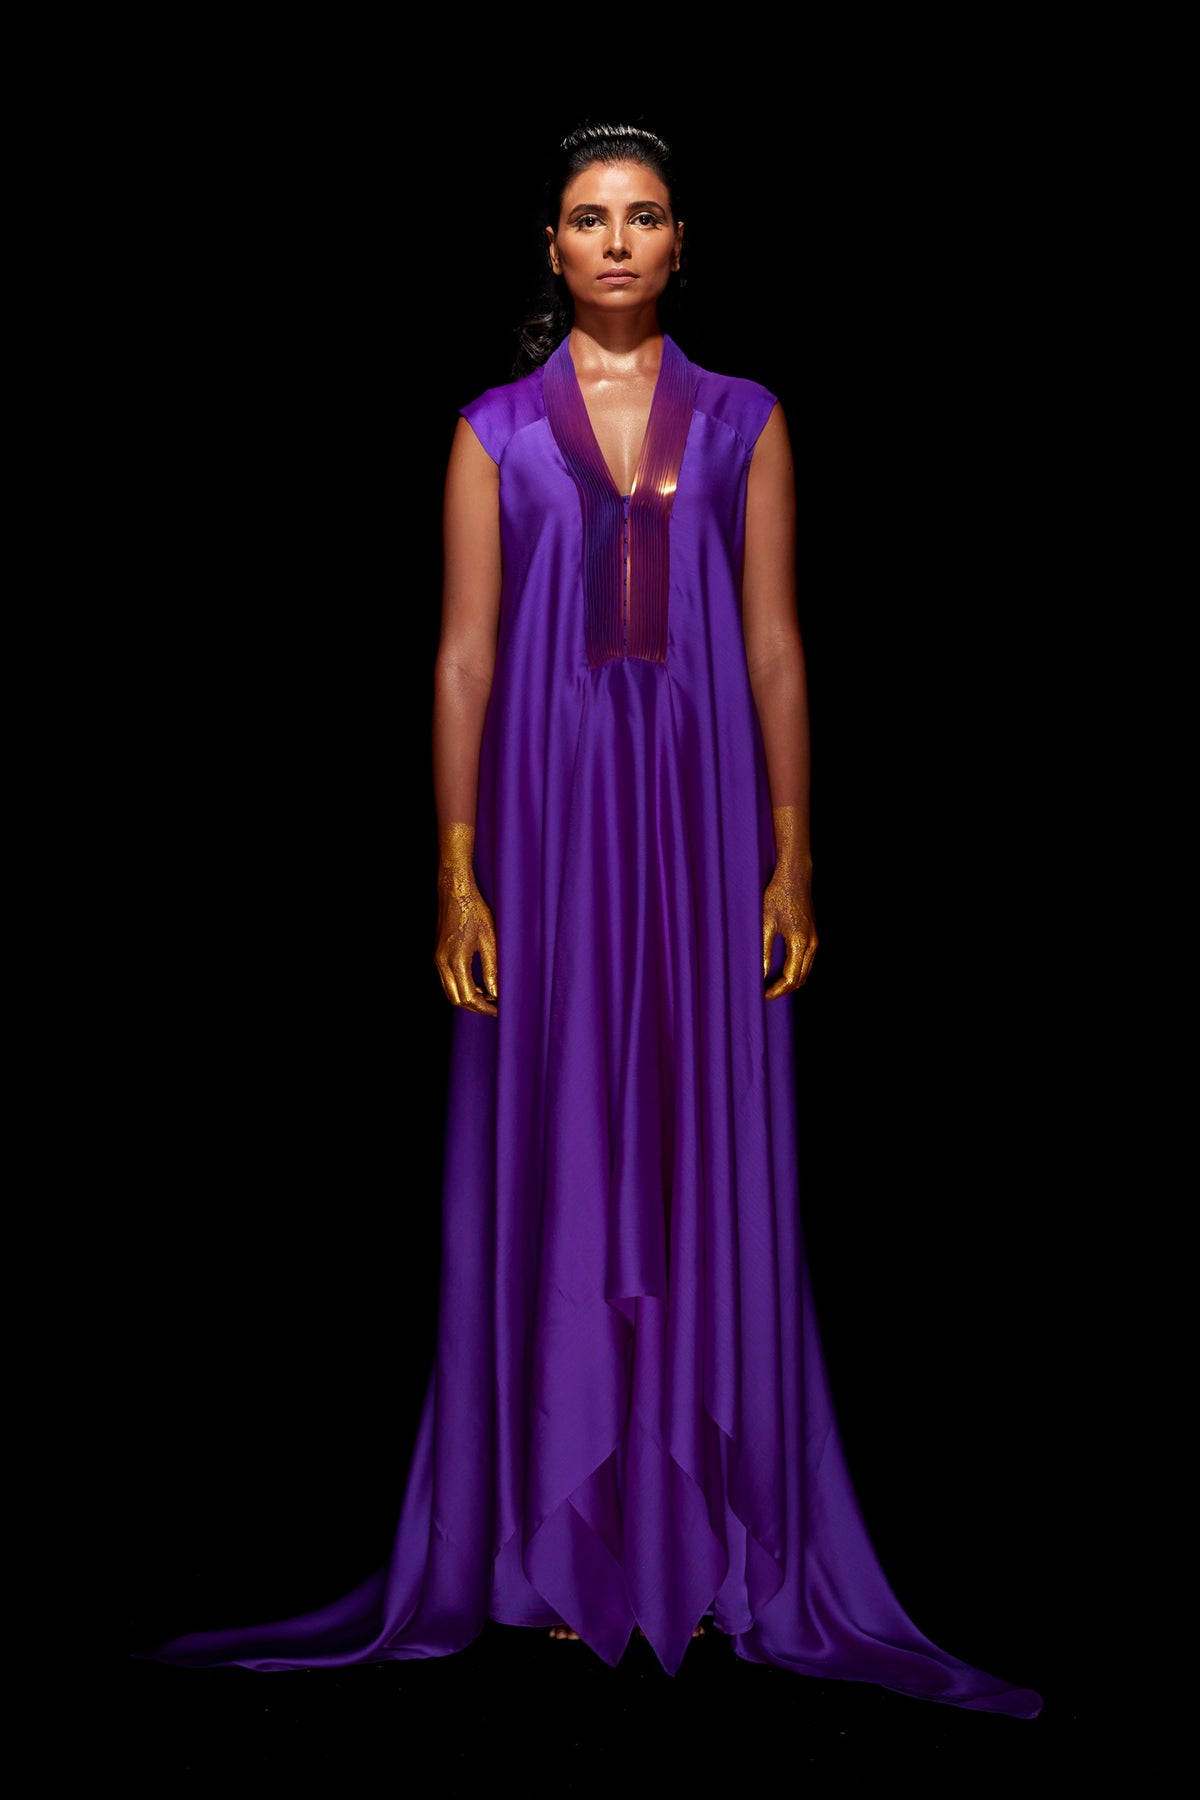 Metallic draped dress in purple